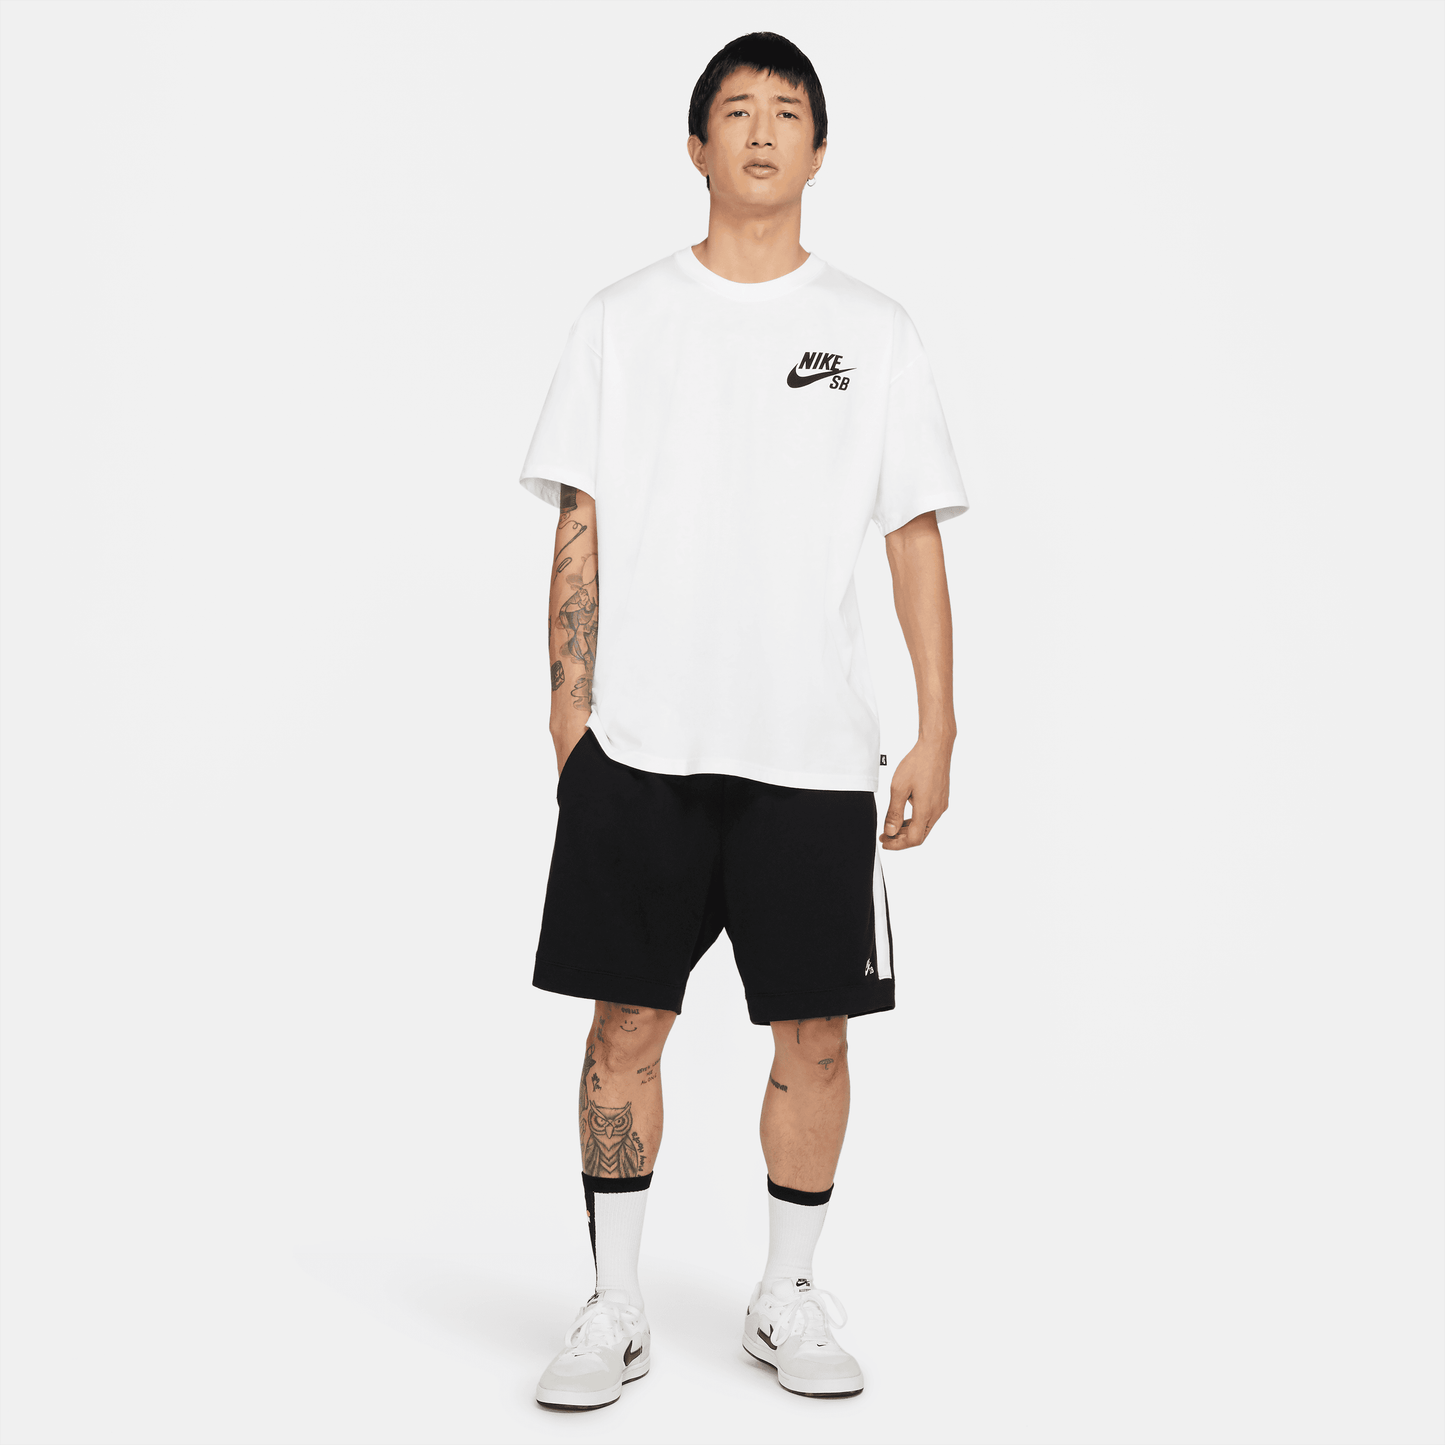 Nike SB Logo Skate T-Shirt White